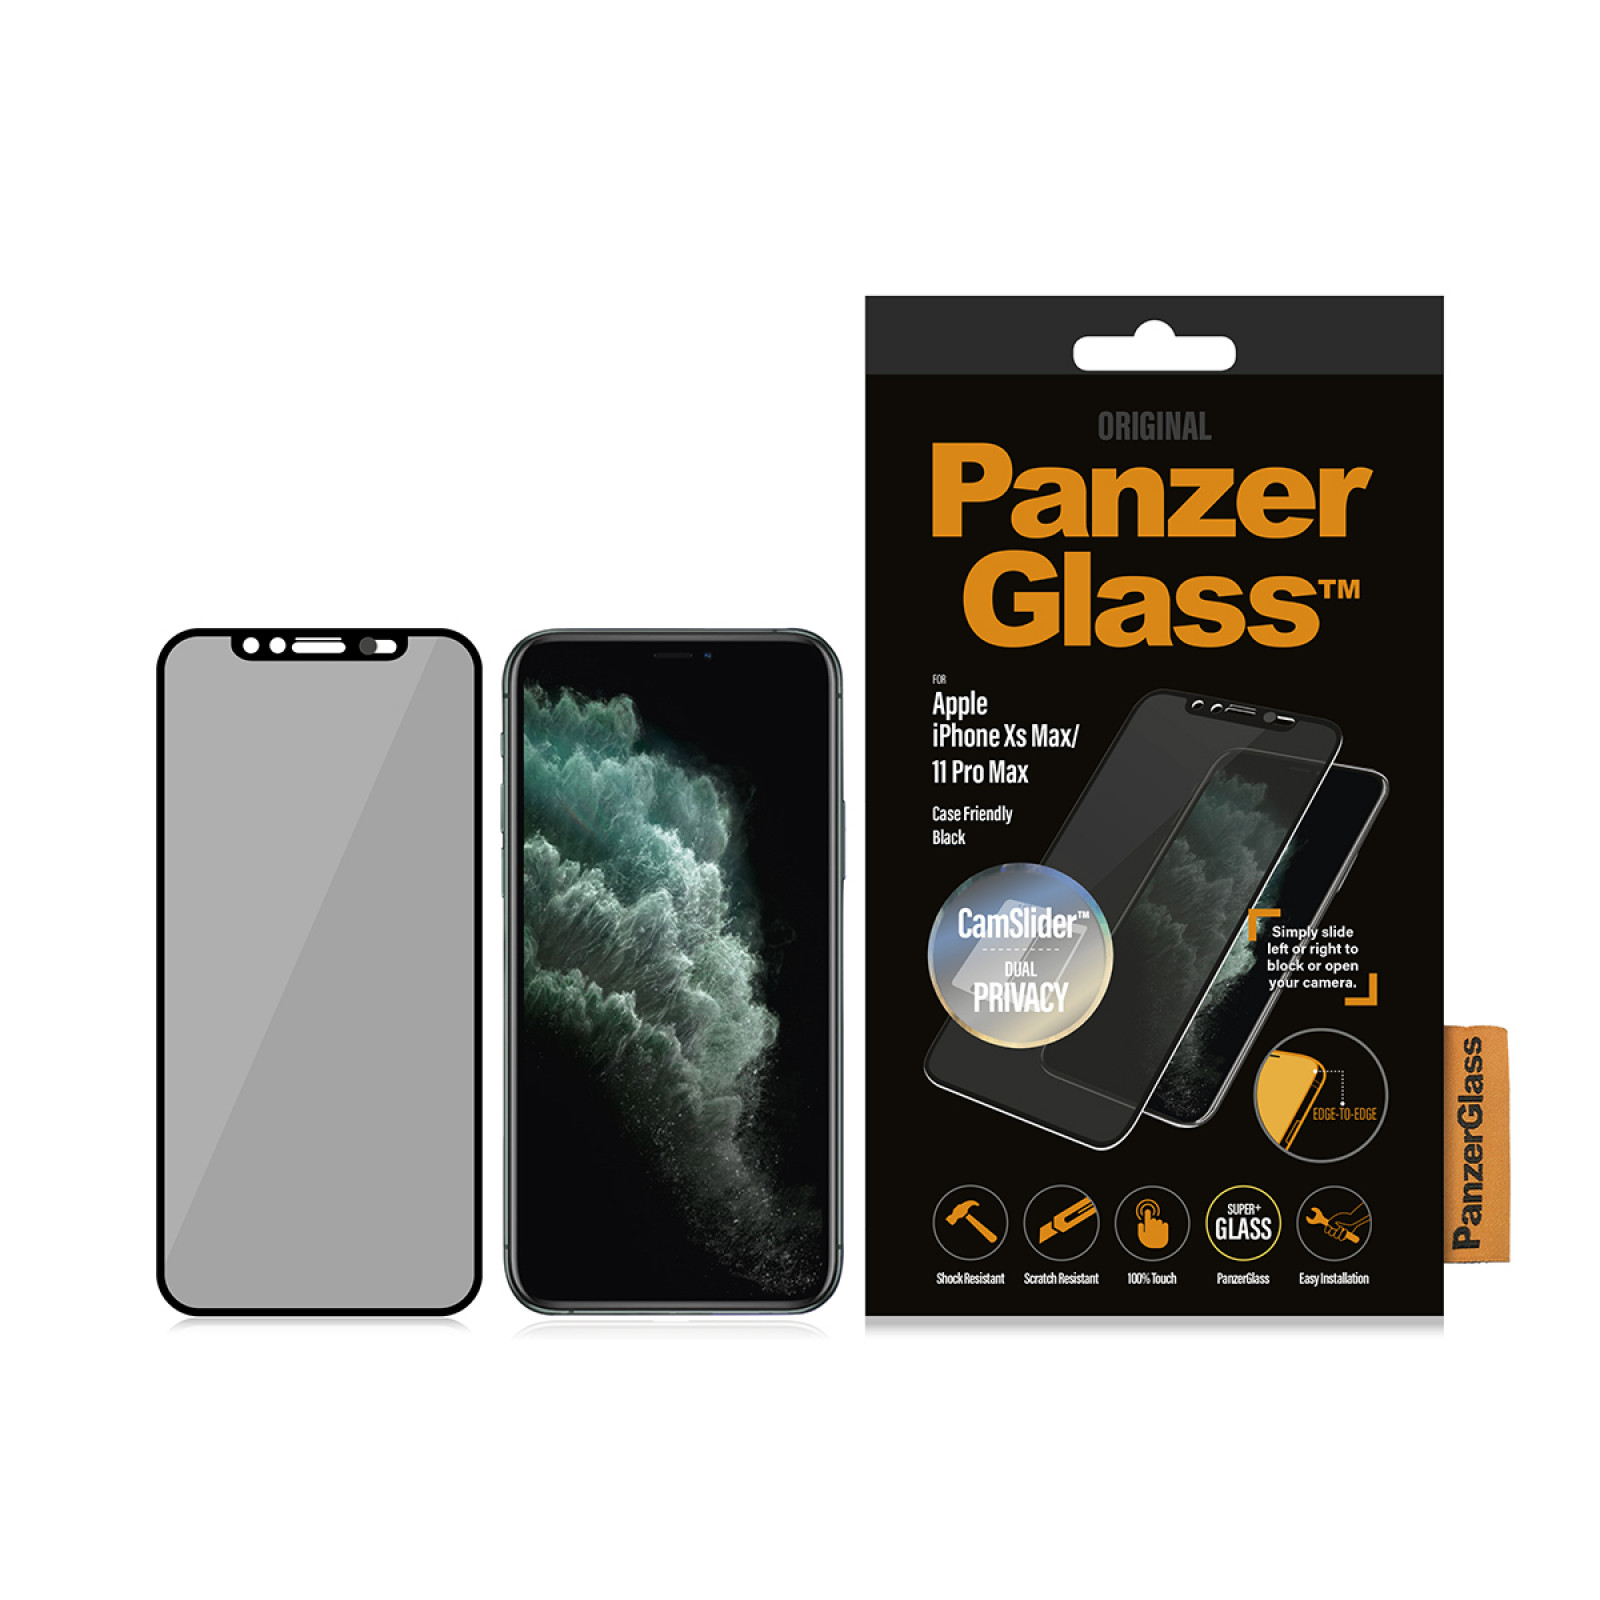 Стъклен протектор Apple iPhone Xs Max/11 Pro Max PanzerGlass  CF CamSlider Privacy - Черен, 116848